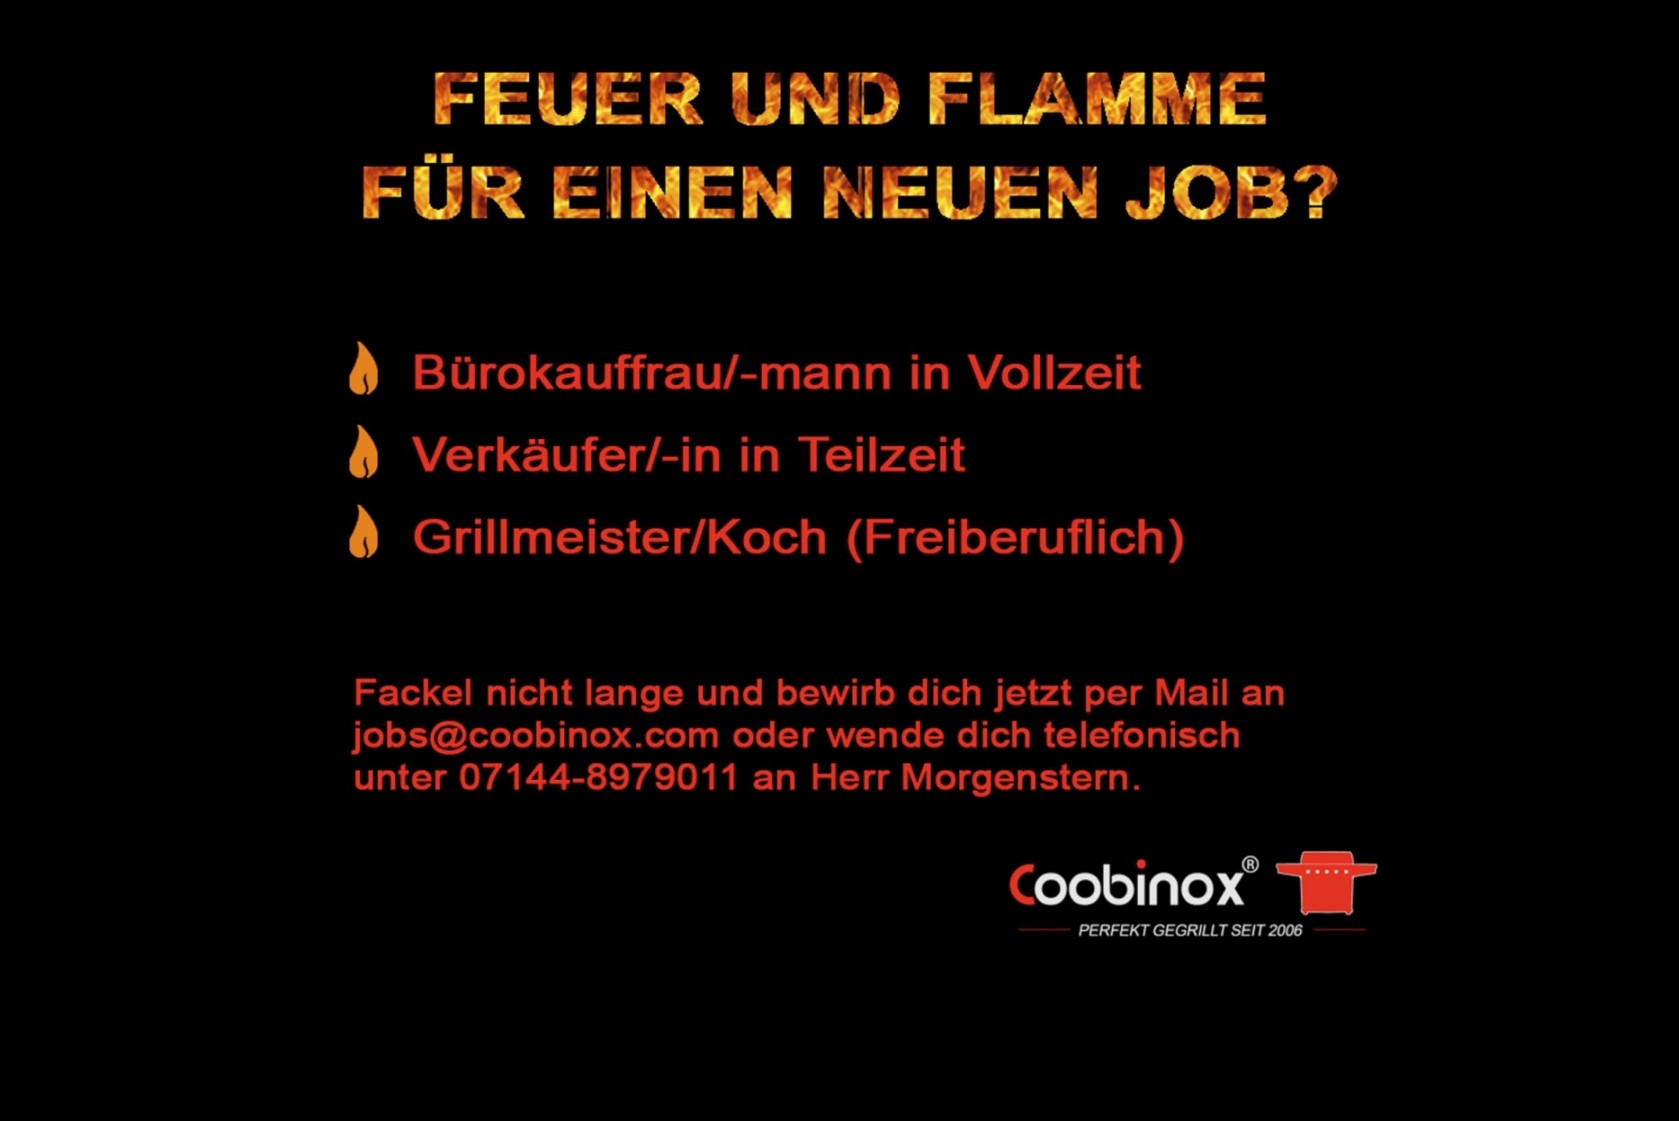 Jobs bei Coobinox